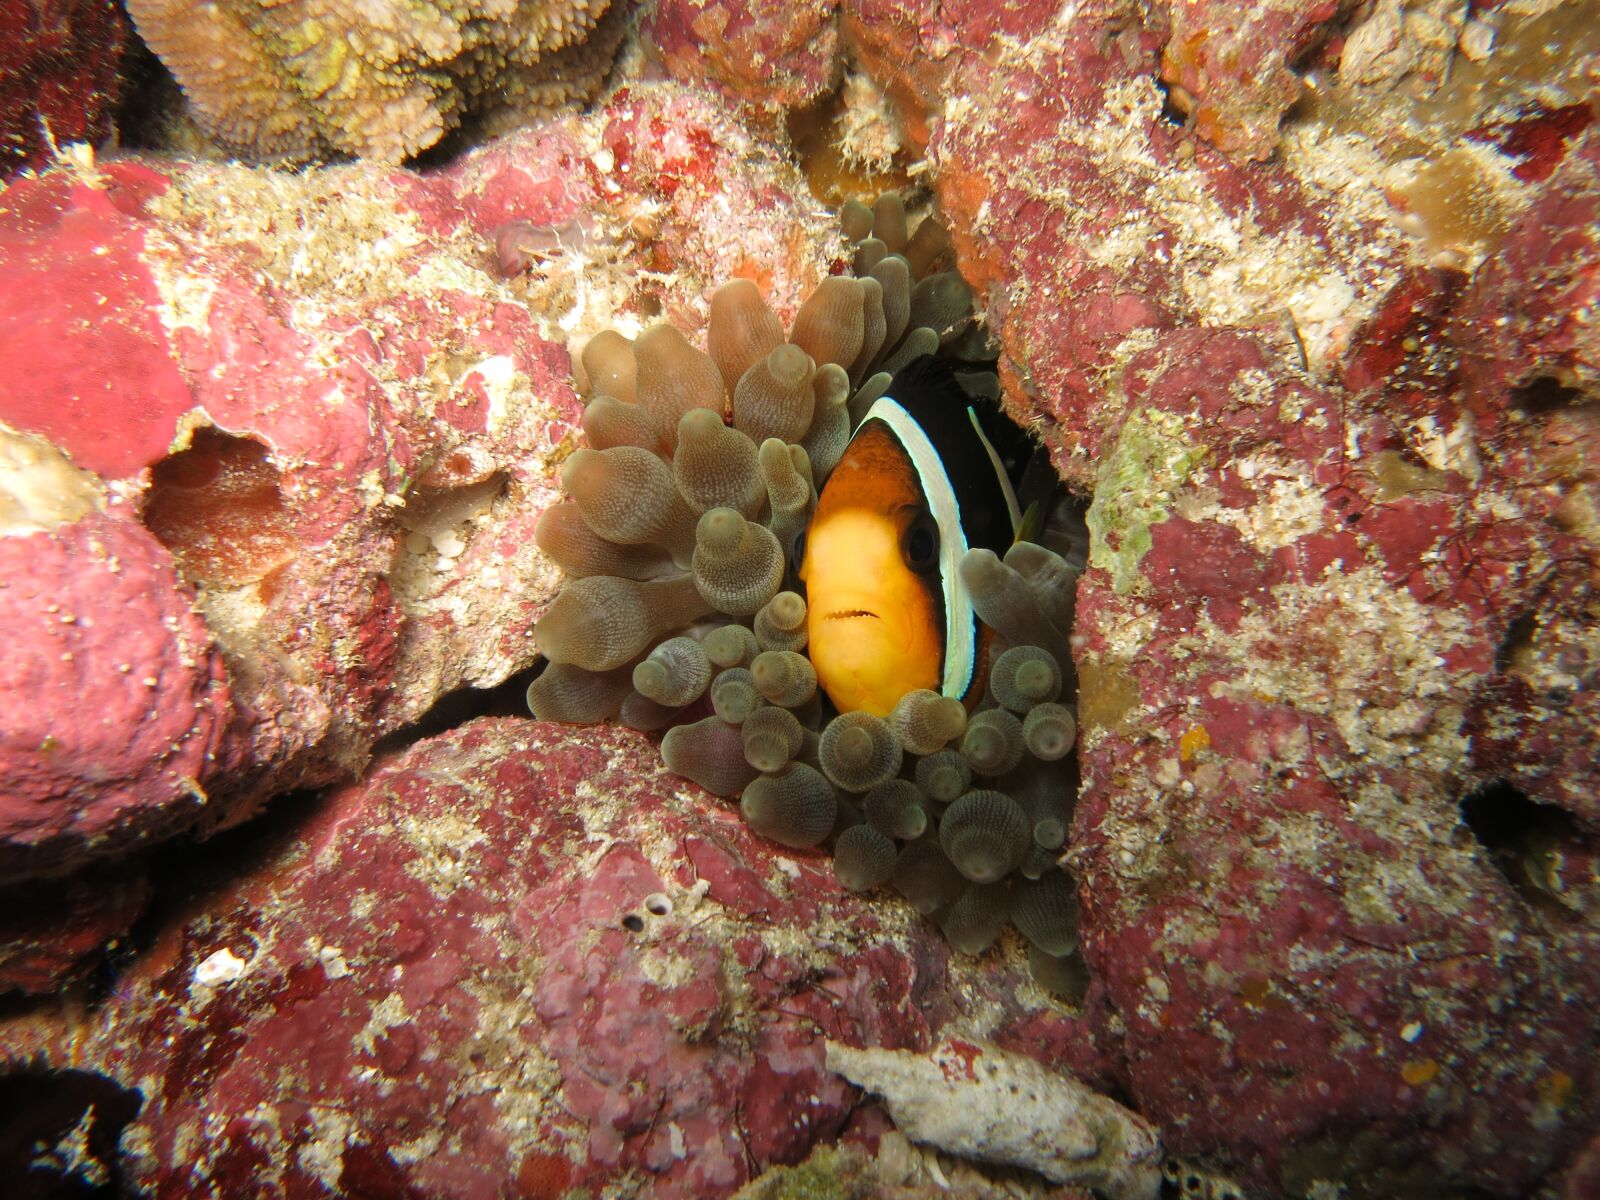 Canon PowerShot S110 sample photo. Nemo, clownfish, anemone photography